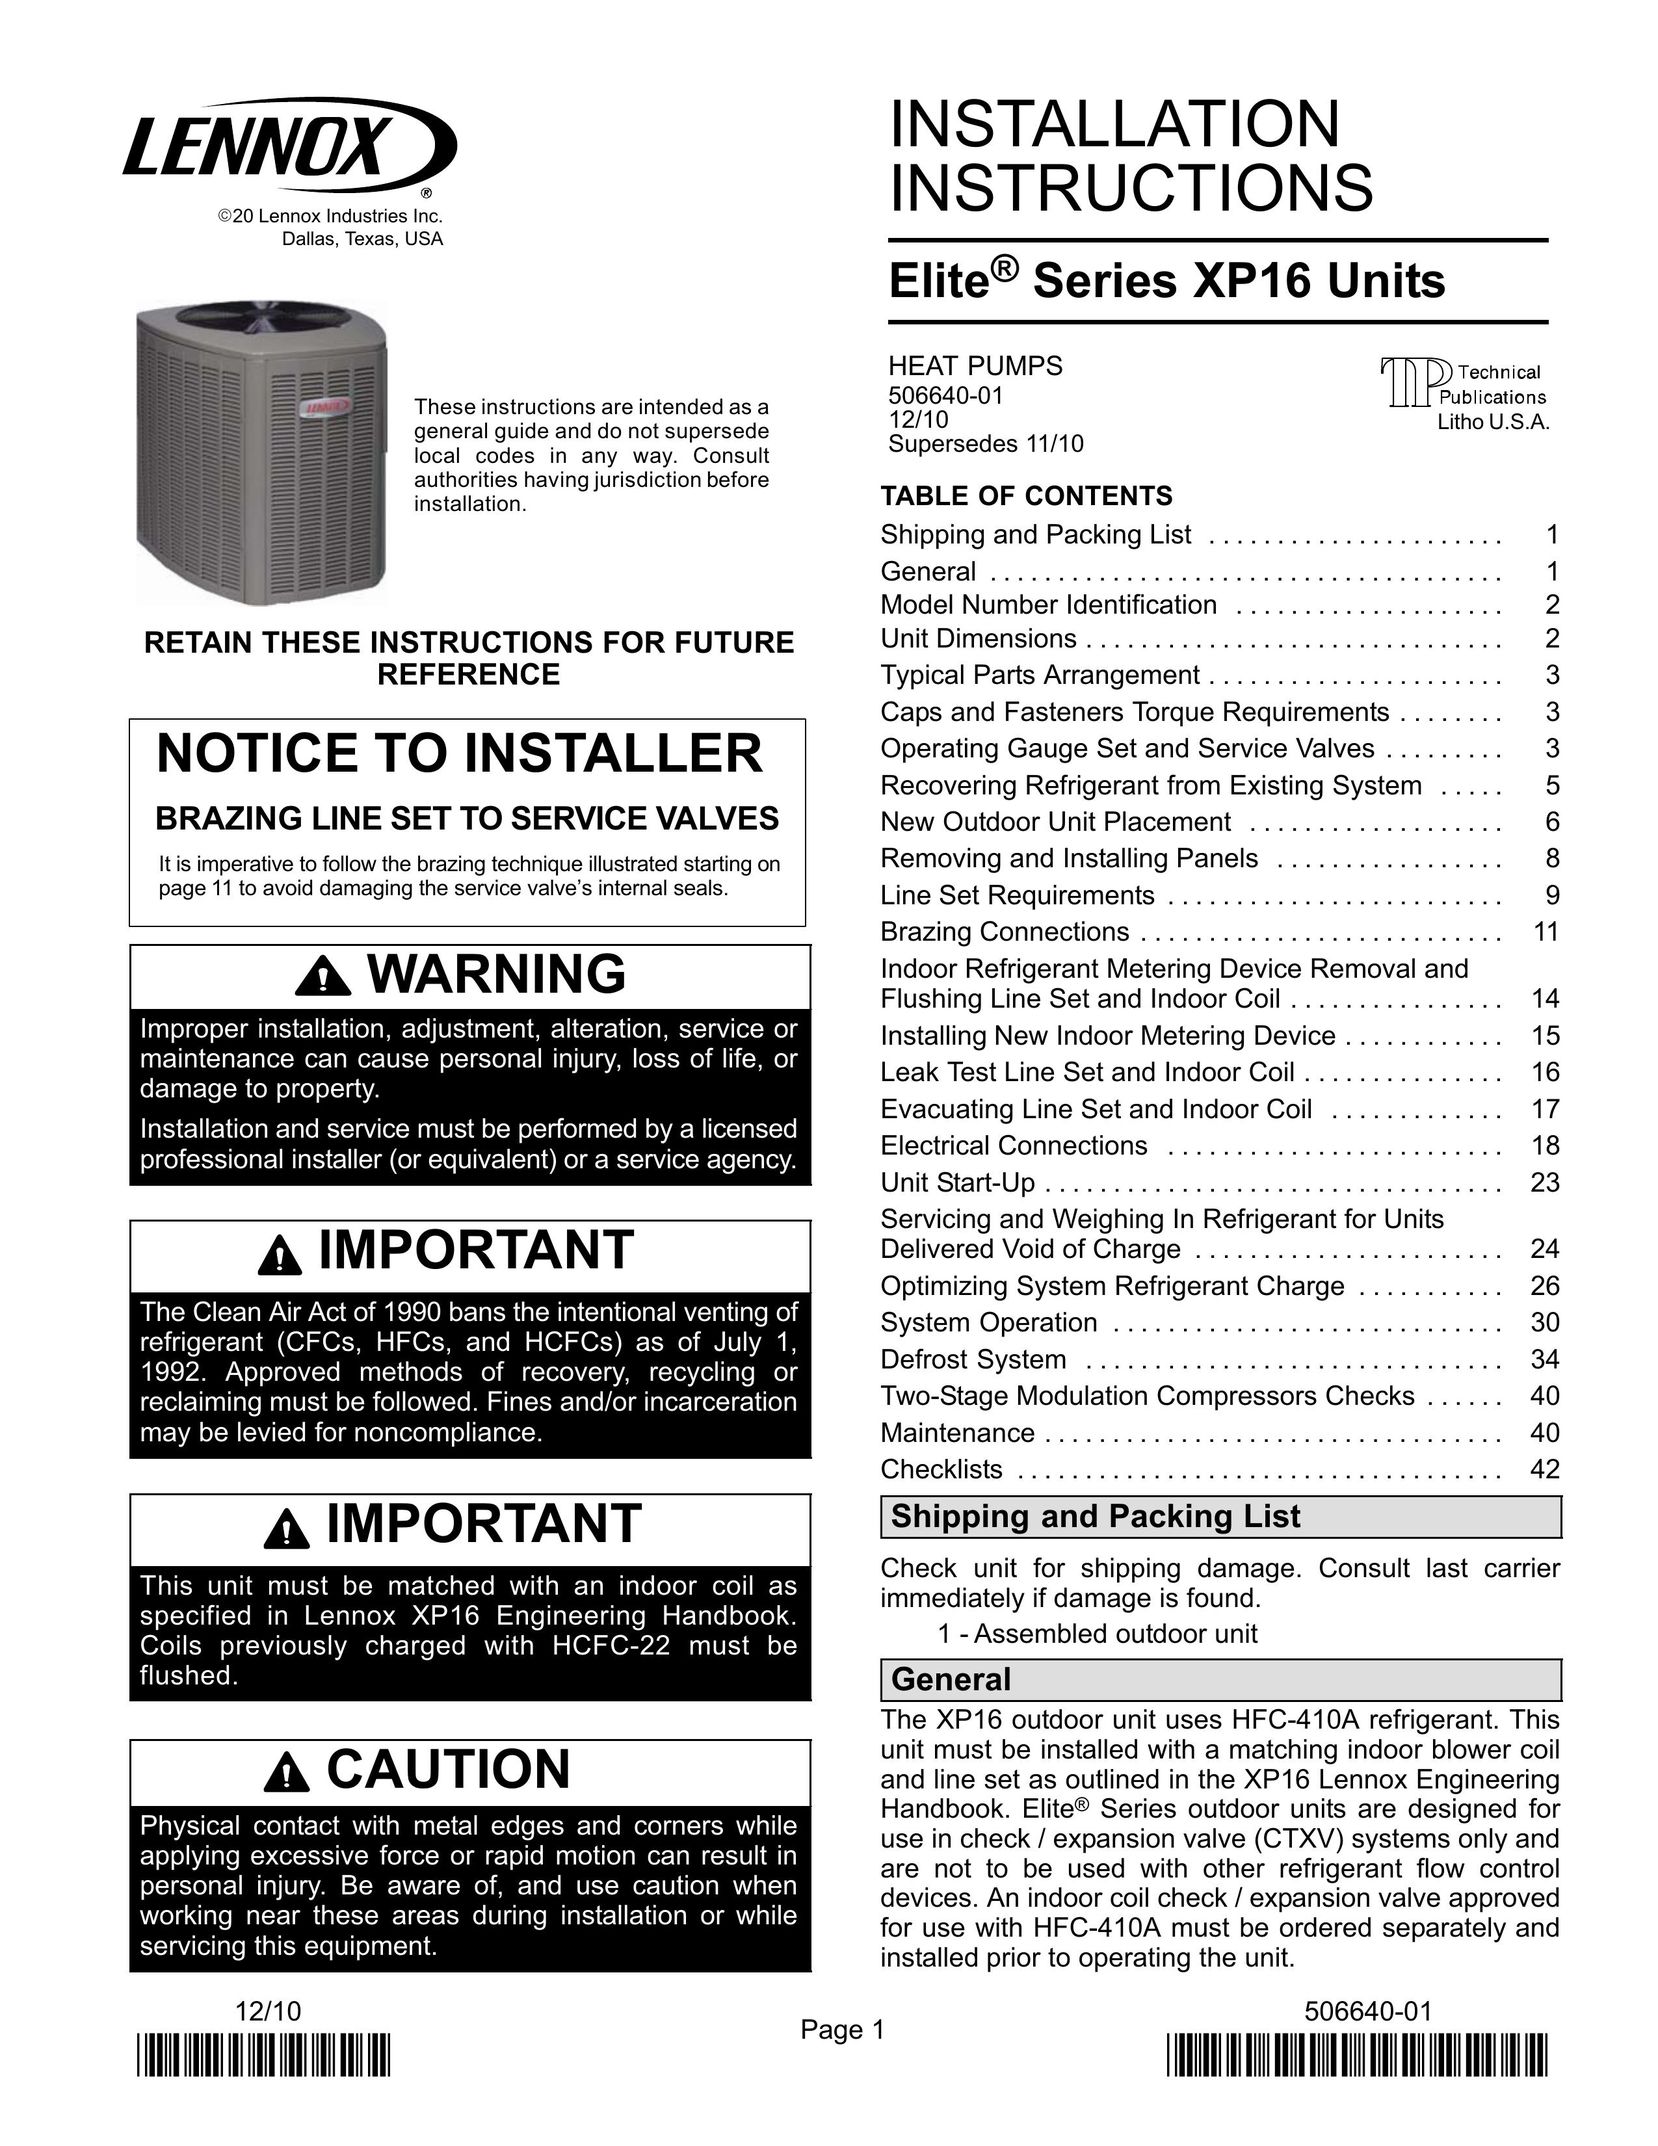 Lenox Elite Series XP16 Units Heat Pumps Air Conditioner User Manual